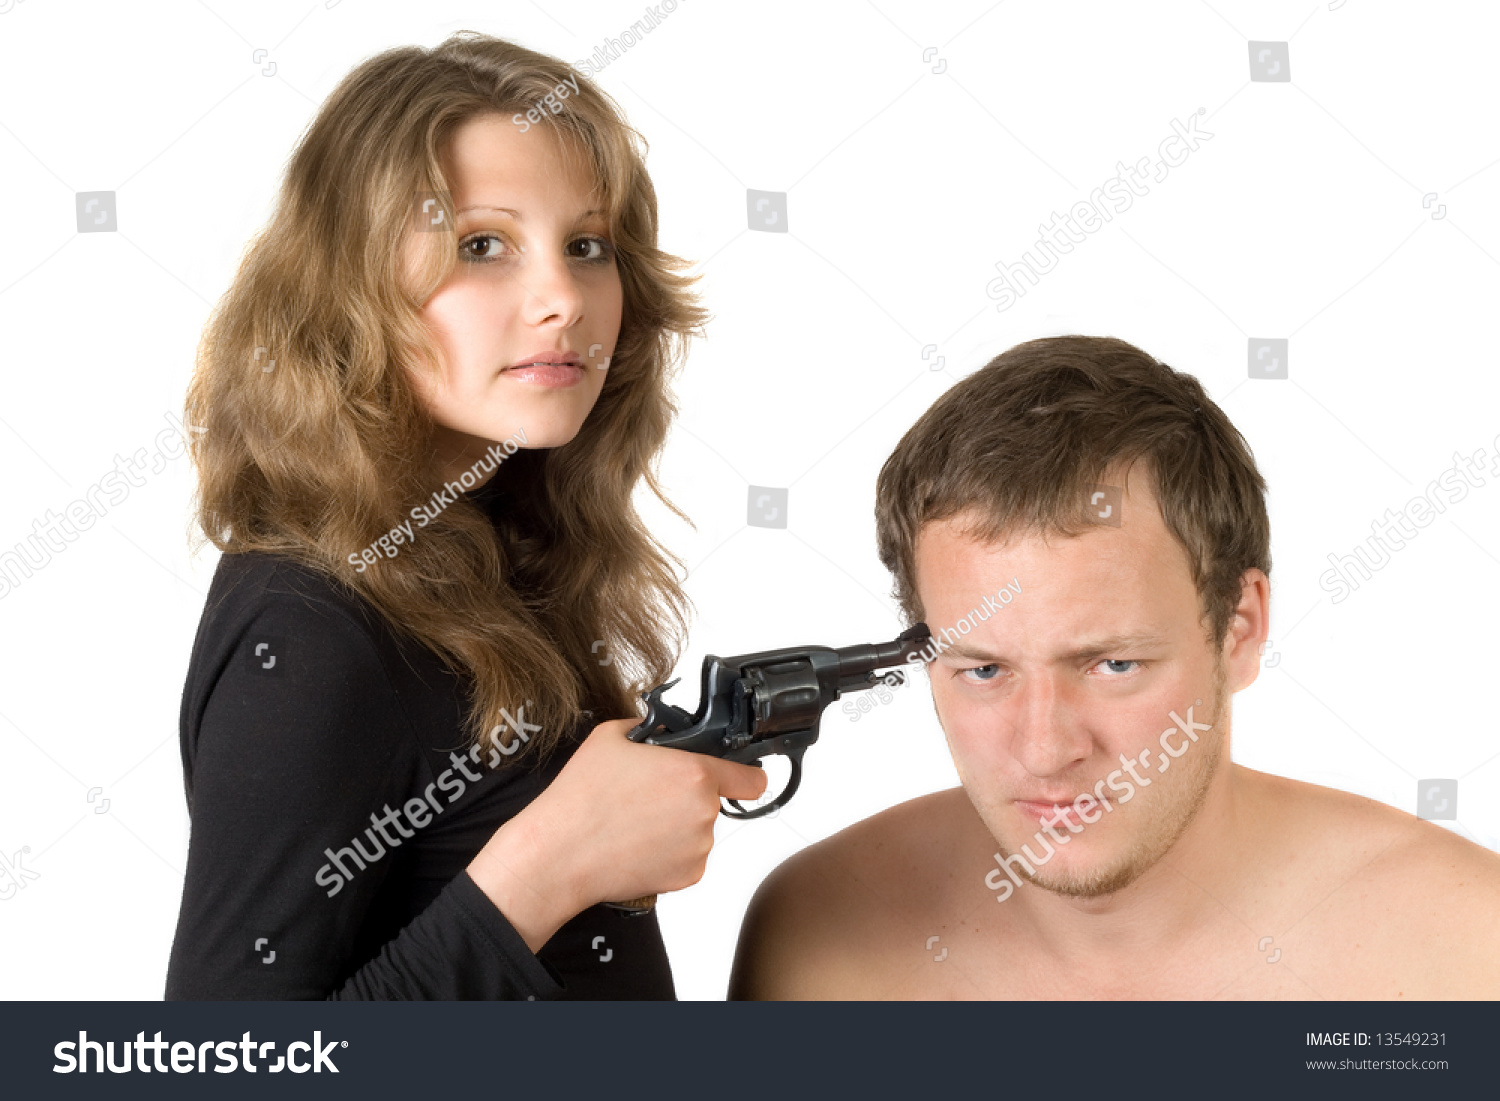 Мужчина с пистолетом угрожает женщине